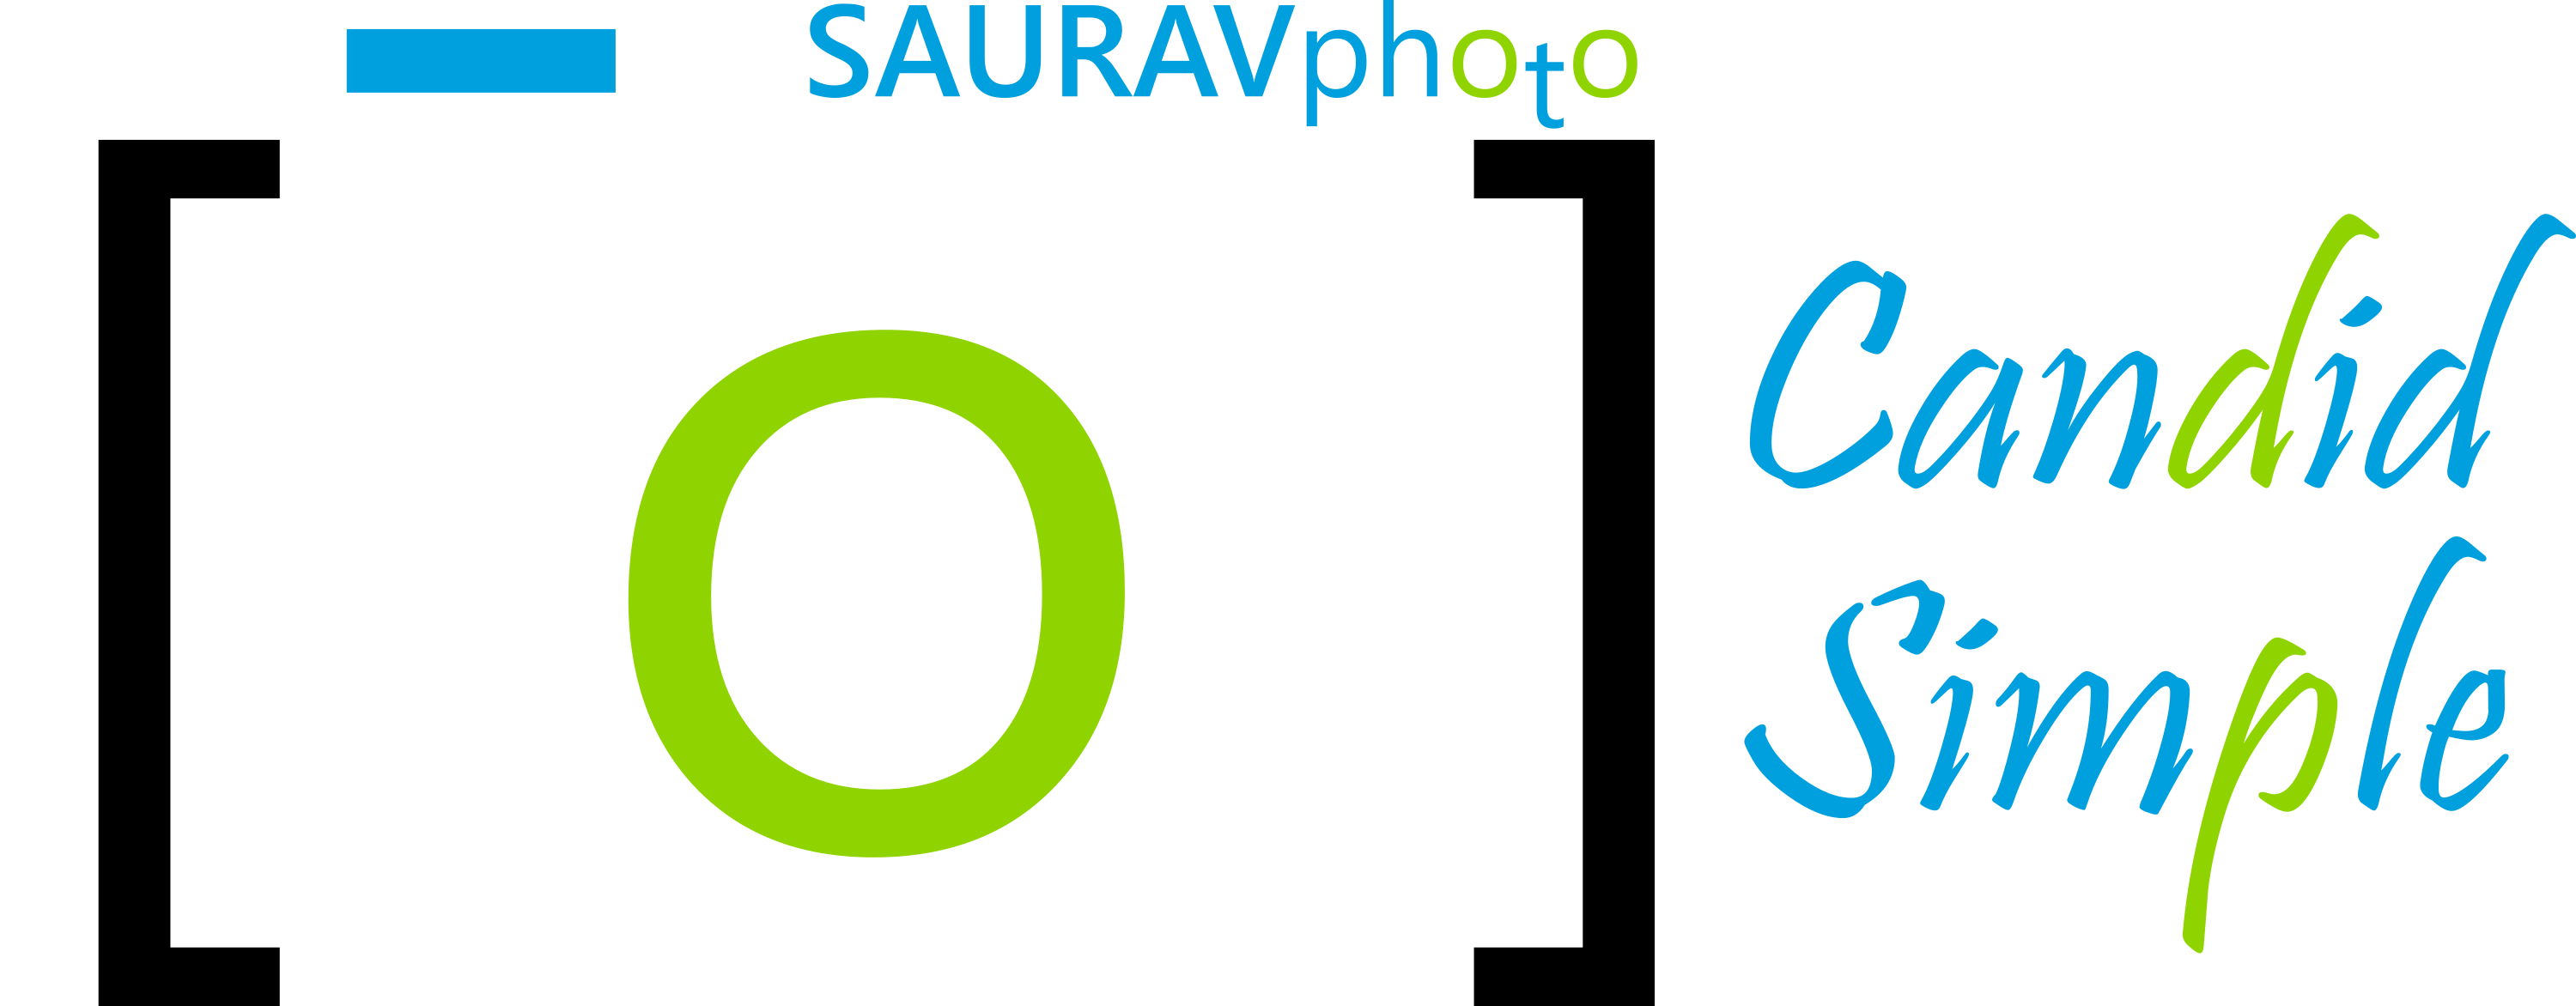 SAURAVphoto Online Store - Website